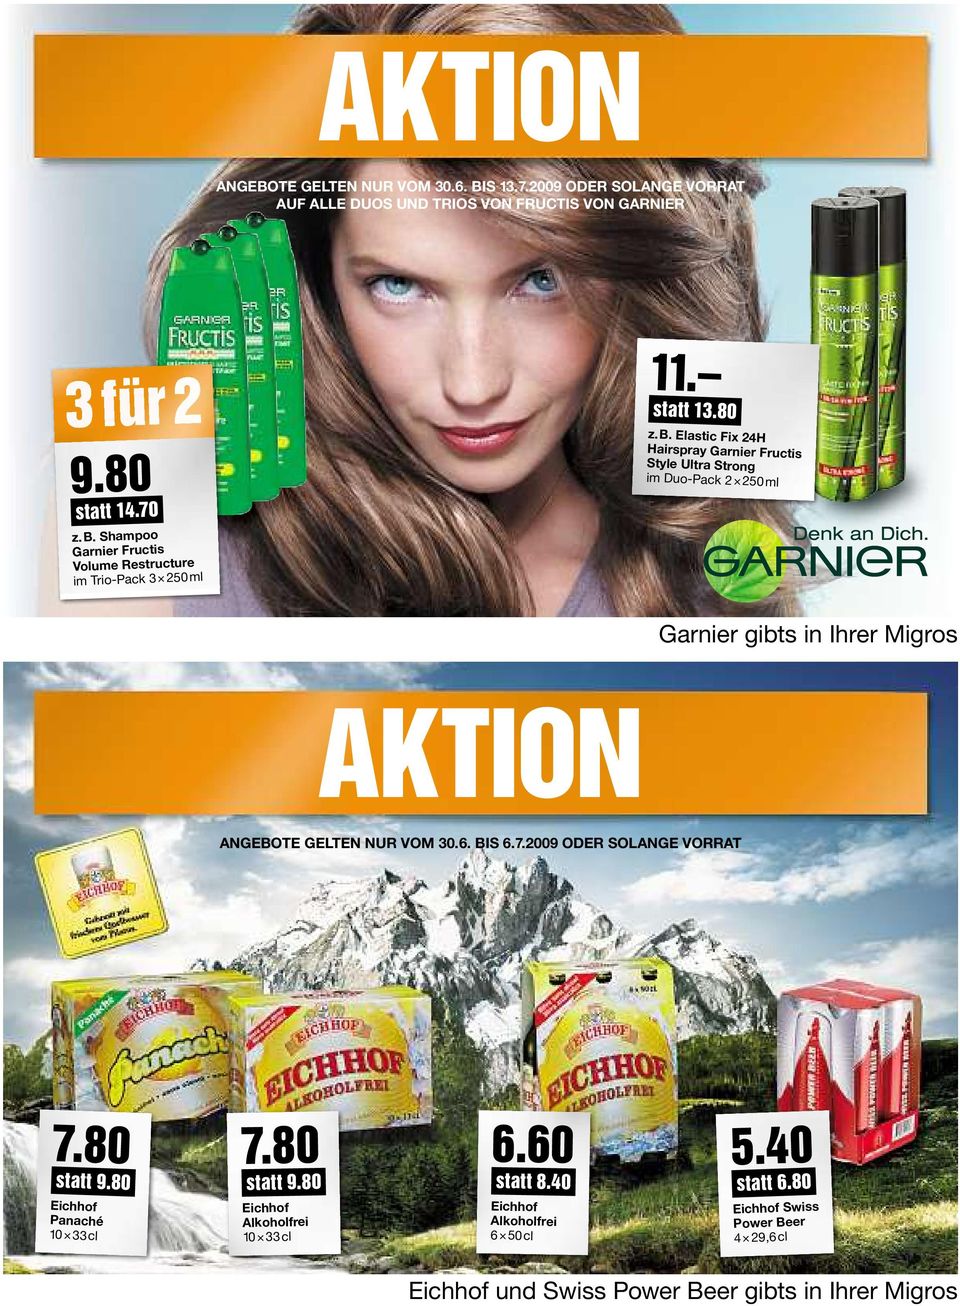 Elastic Fix 24H Hairspray Garnier Fructis Style Ultra Strong im Duo-Pack 2 250ml Garnier gibts in Ihrer Migros AKTION ANGEBOTE GELTEN NUR VOM 30.6. BIS 6.7.